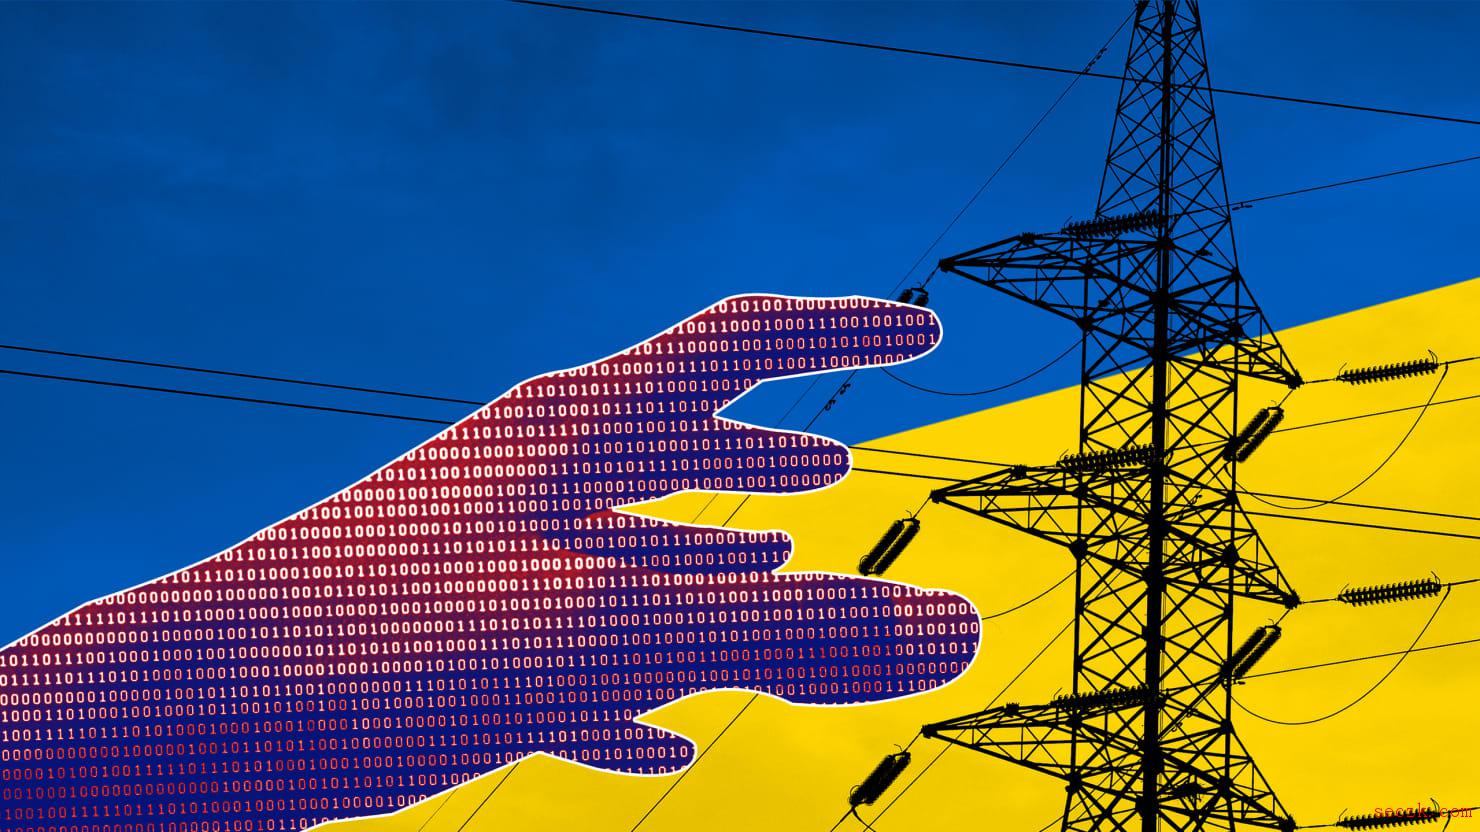 重新审视乌克兰大断电：黑客试图造成实体破坏